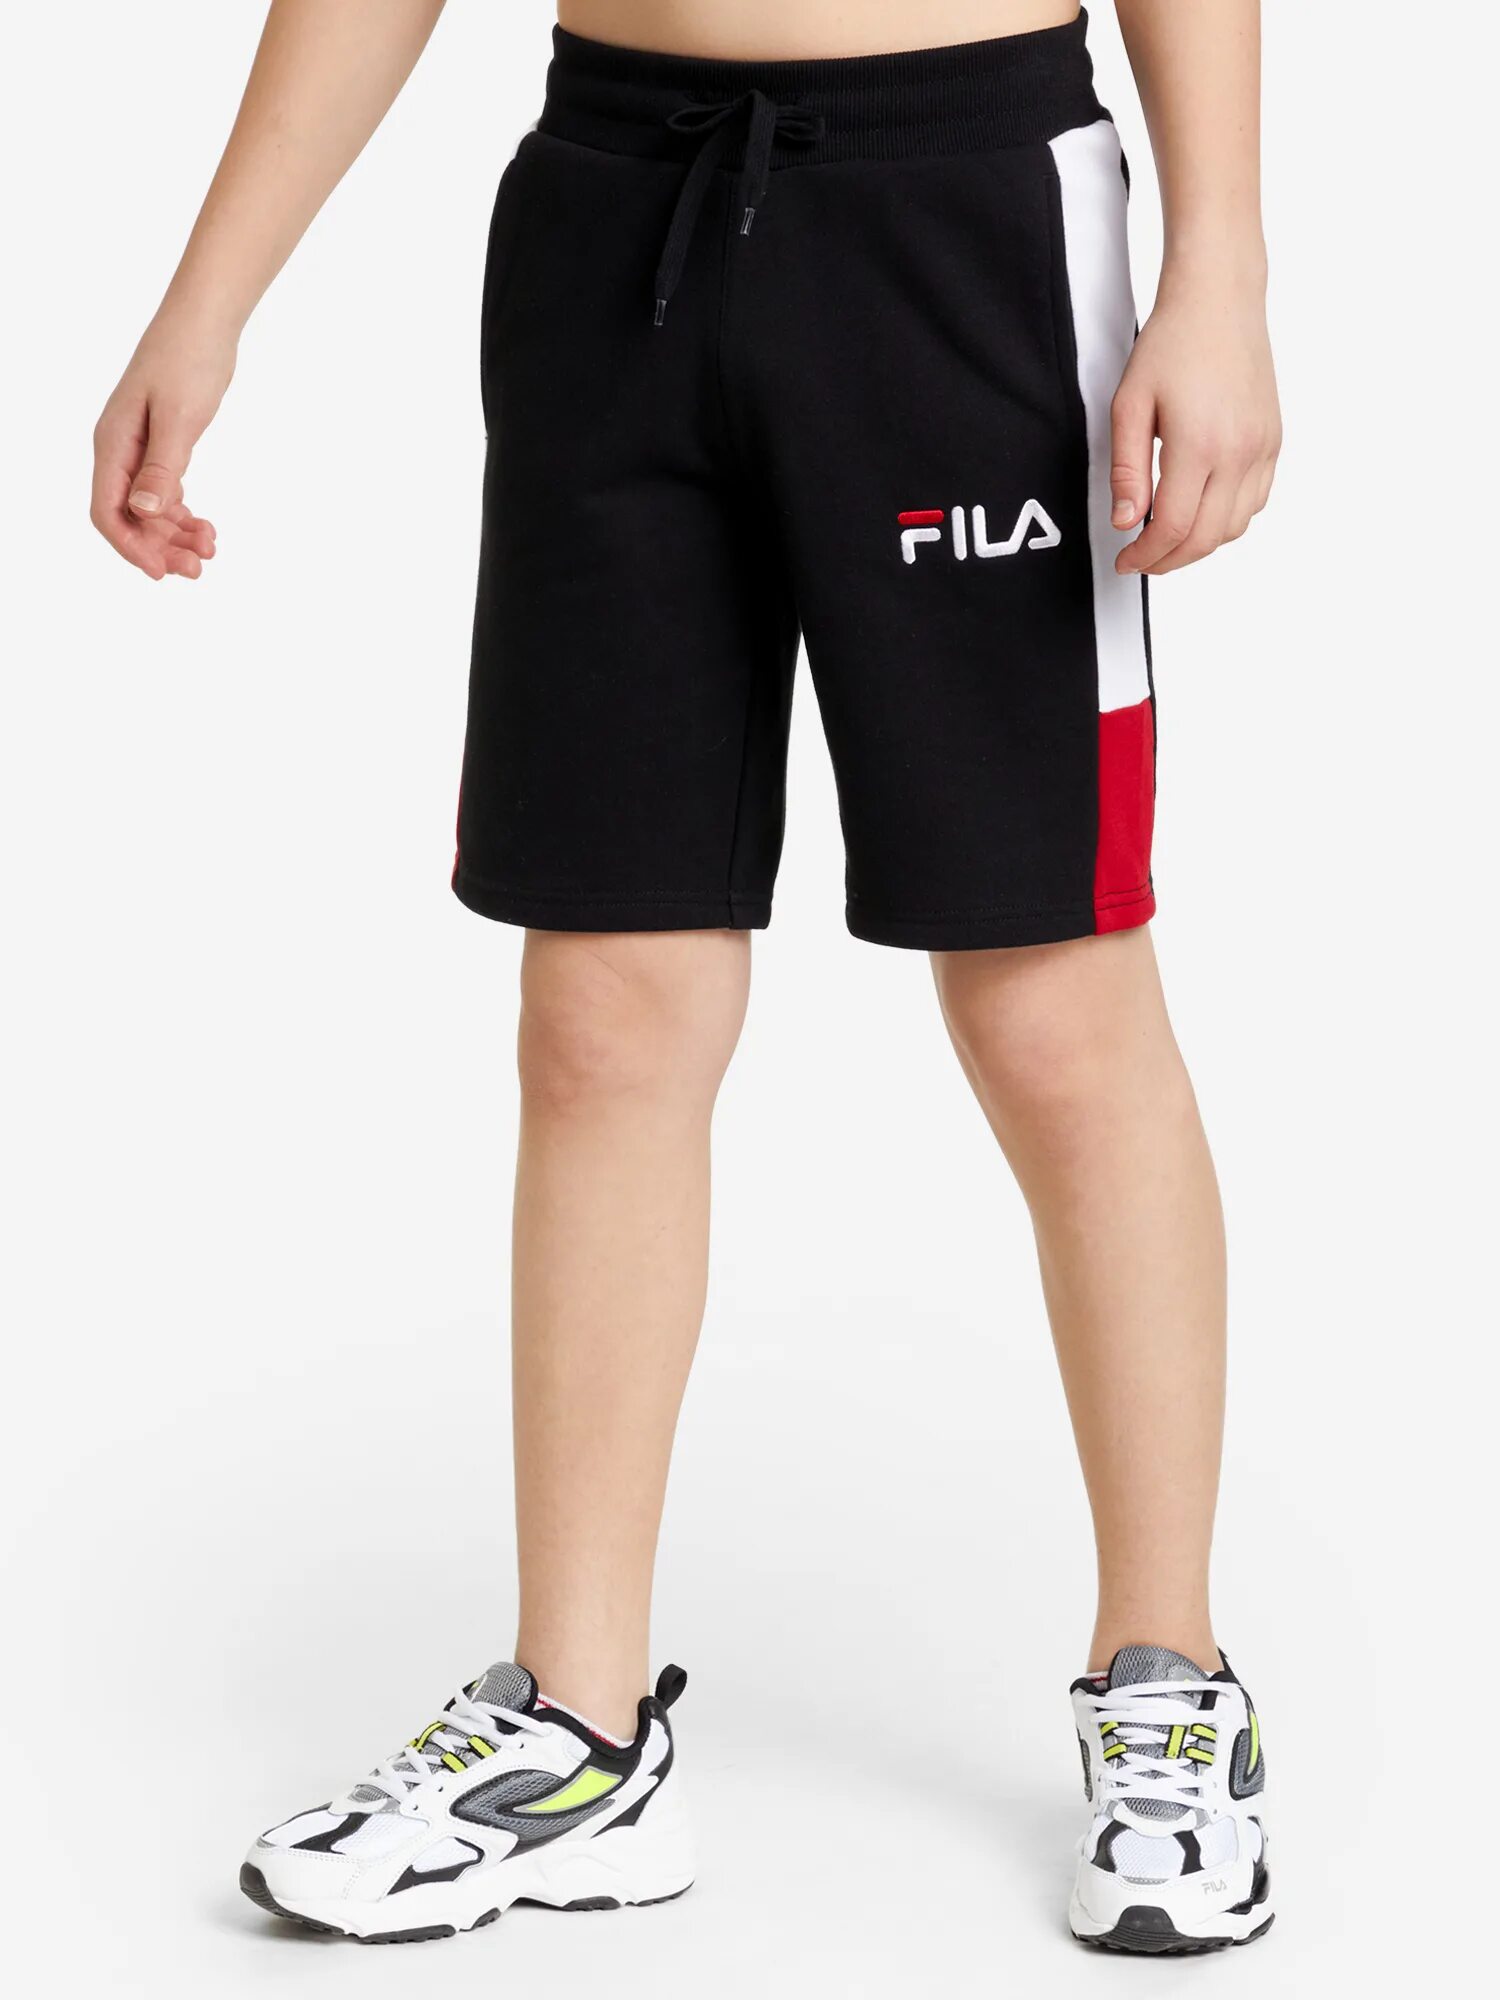 Шорты fila. Шорты Fila для мальчиков. Шорты Fila Pro. Fila спортивные шорты. Спортмастер Fila шорты.